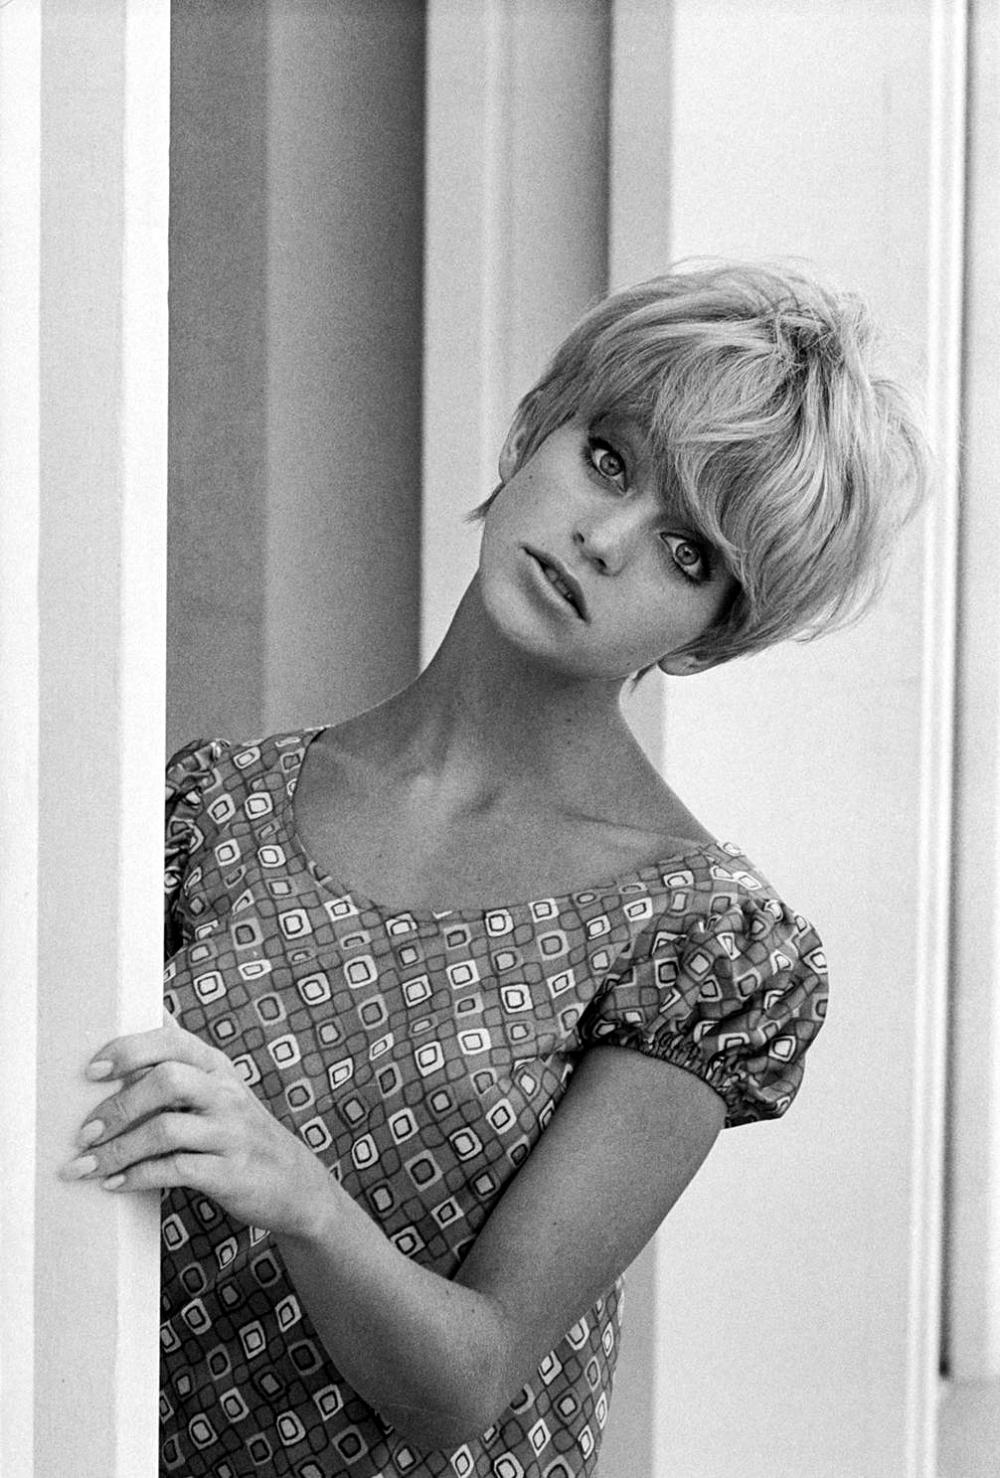 Photo №4575 Goldie Hawn.